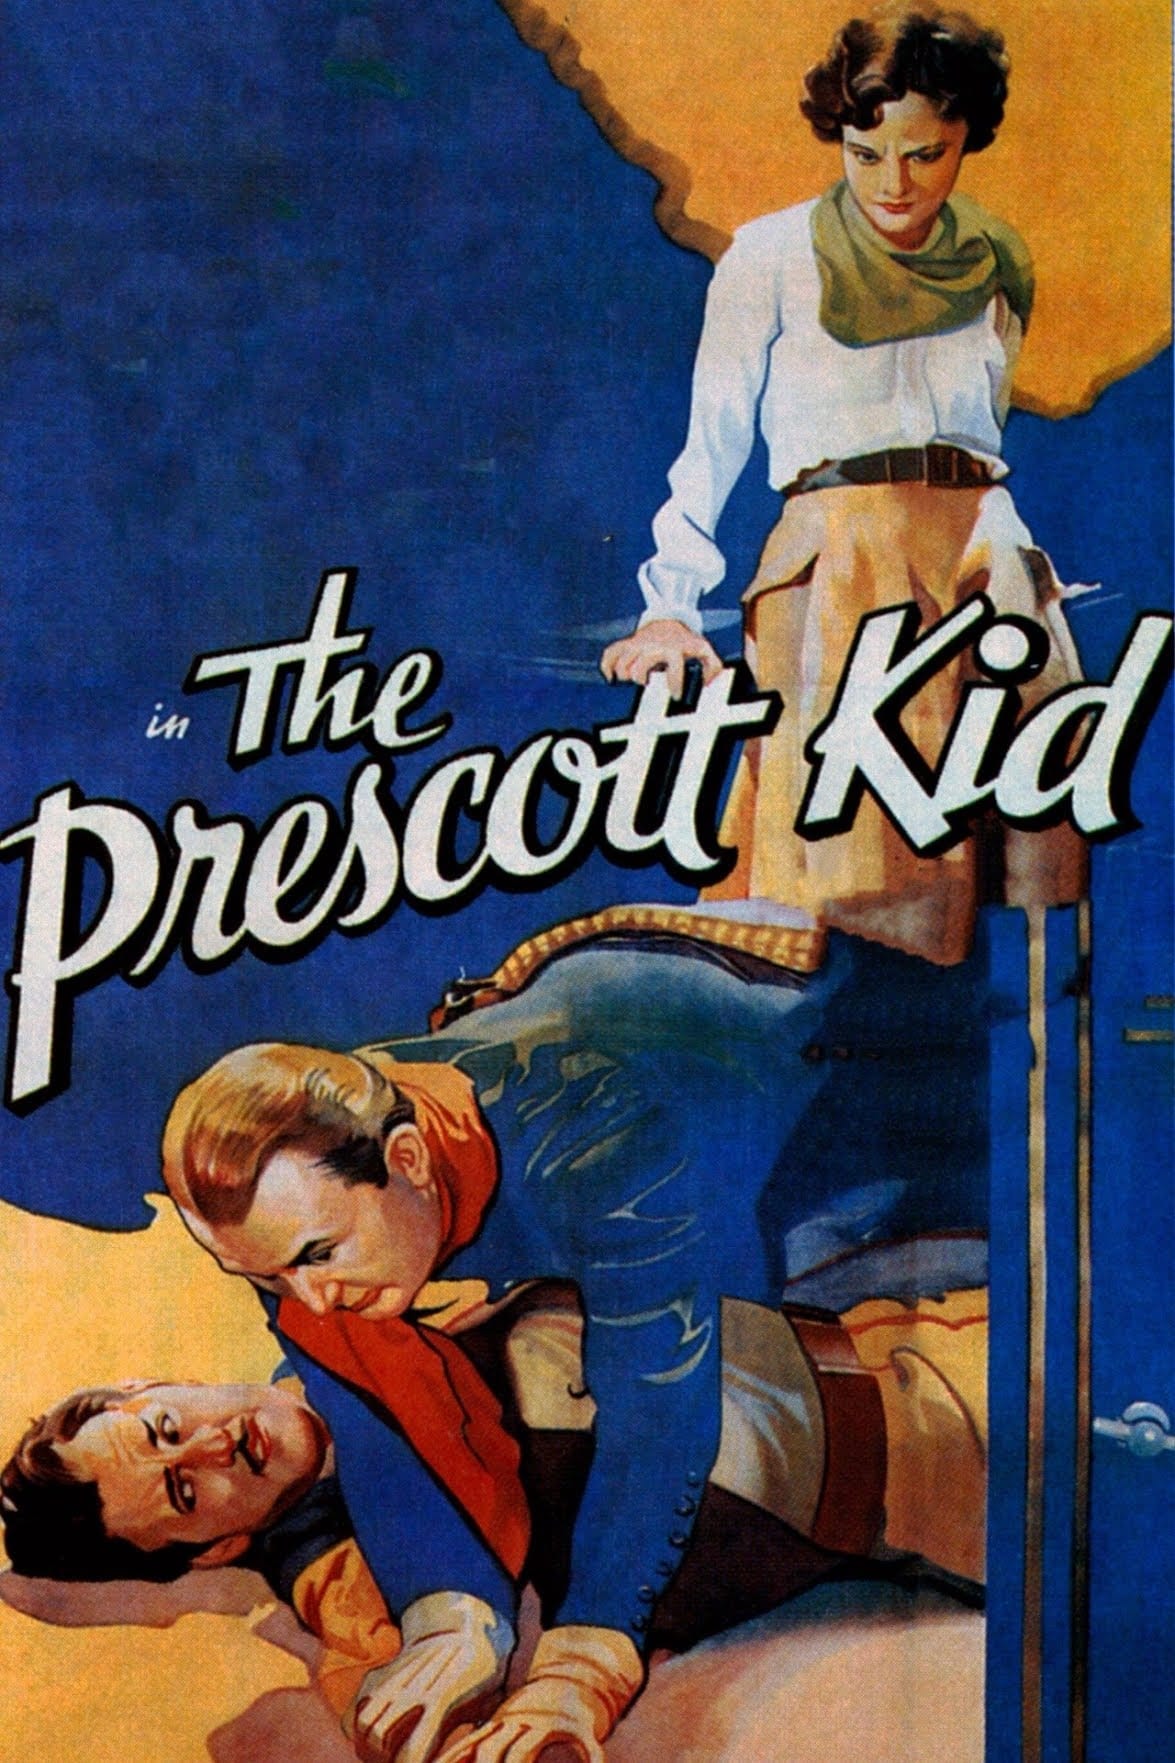 Prescott Kid